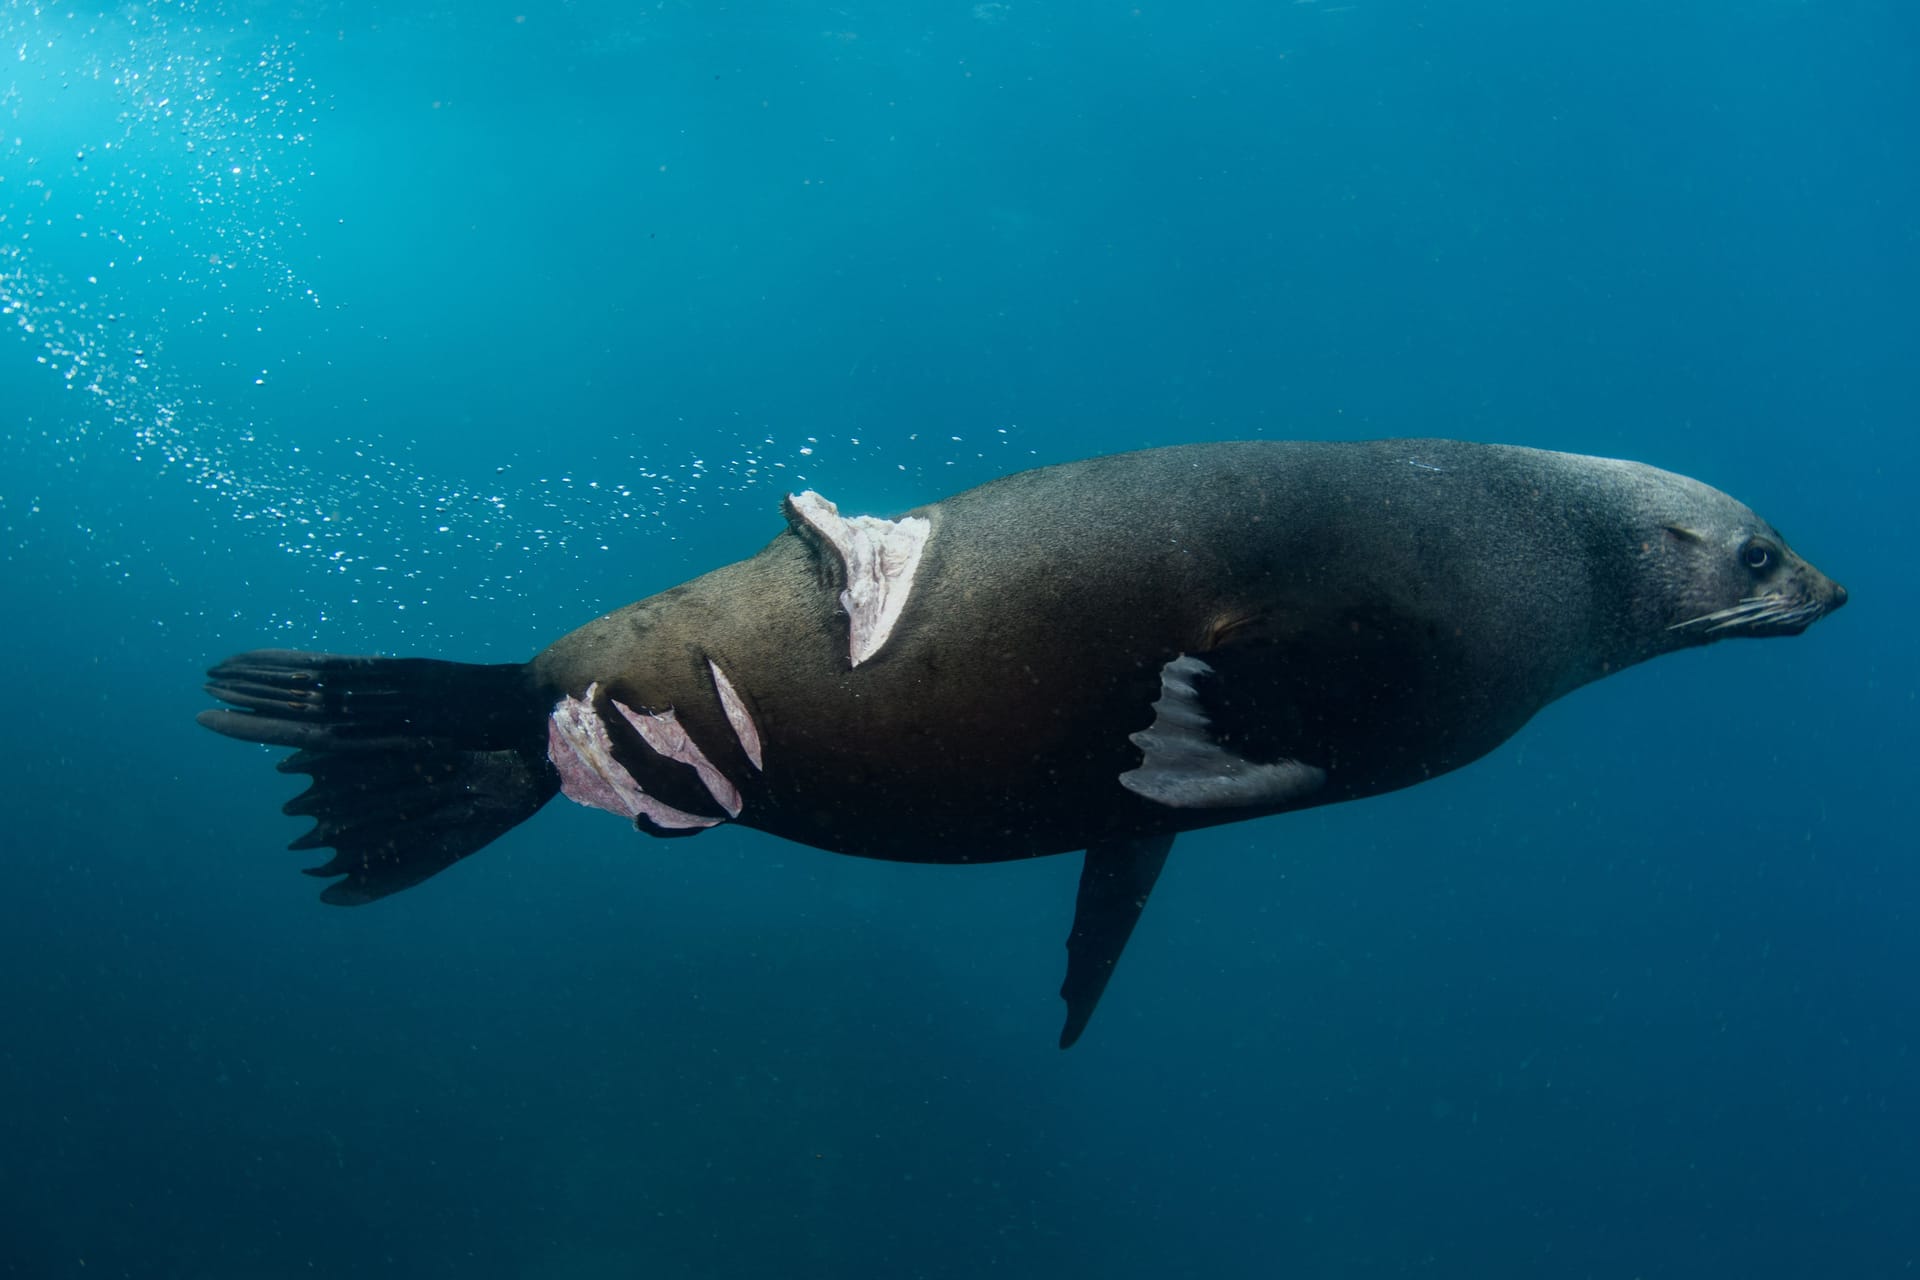 Ein australischer Seelöwe, der von einer Schiffsschraube verletzt wurde: Nicolas Remy aus Australien gewann mit diesem Bild die Kategorie "Fotojournalismus".